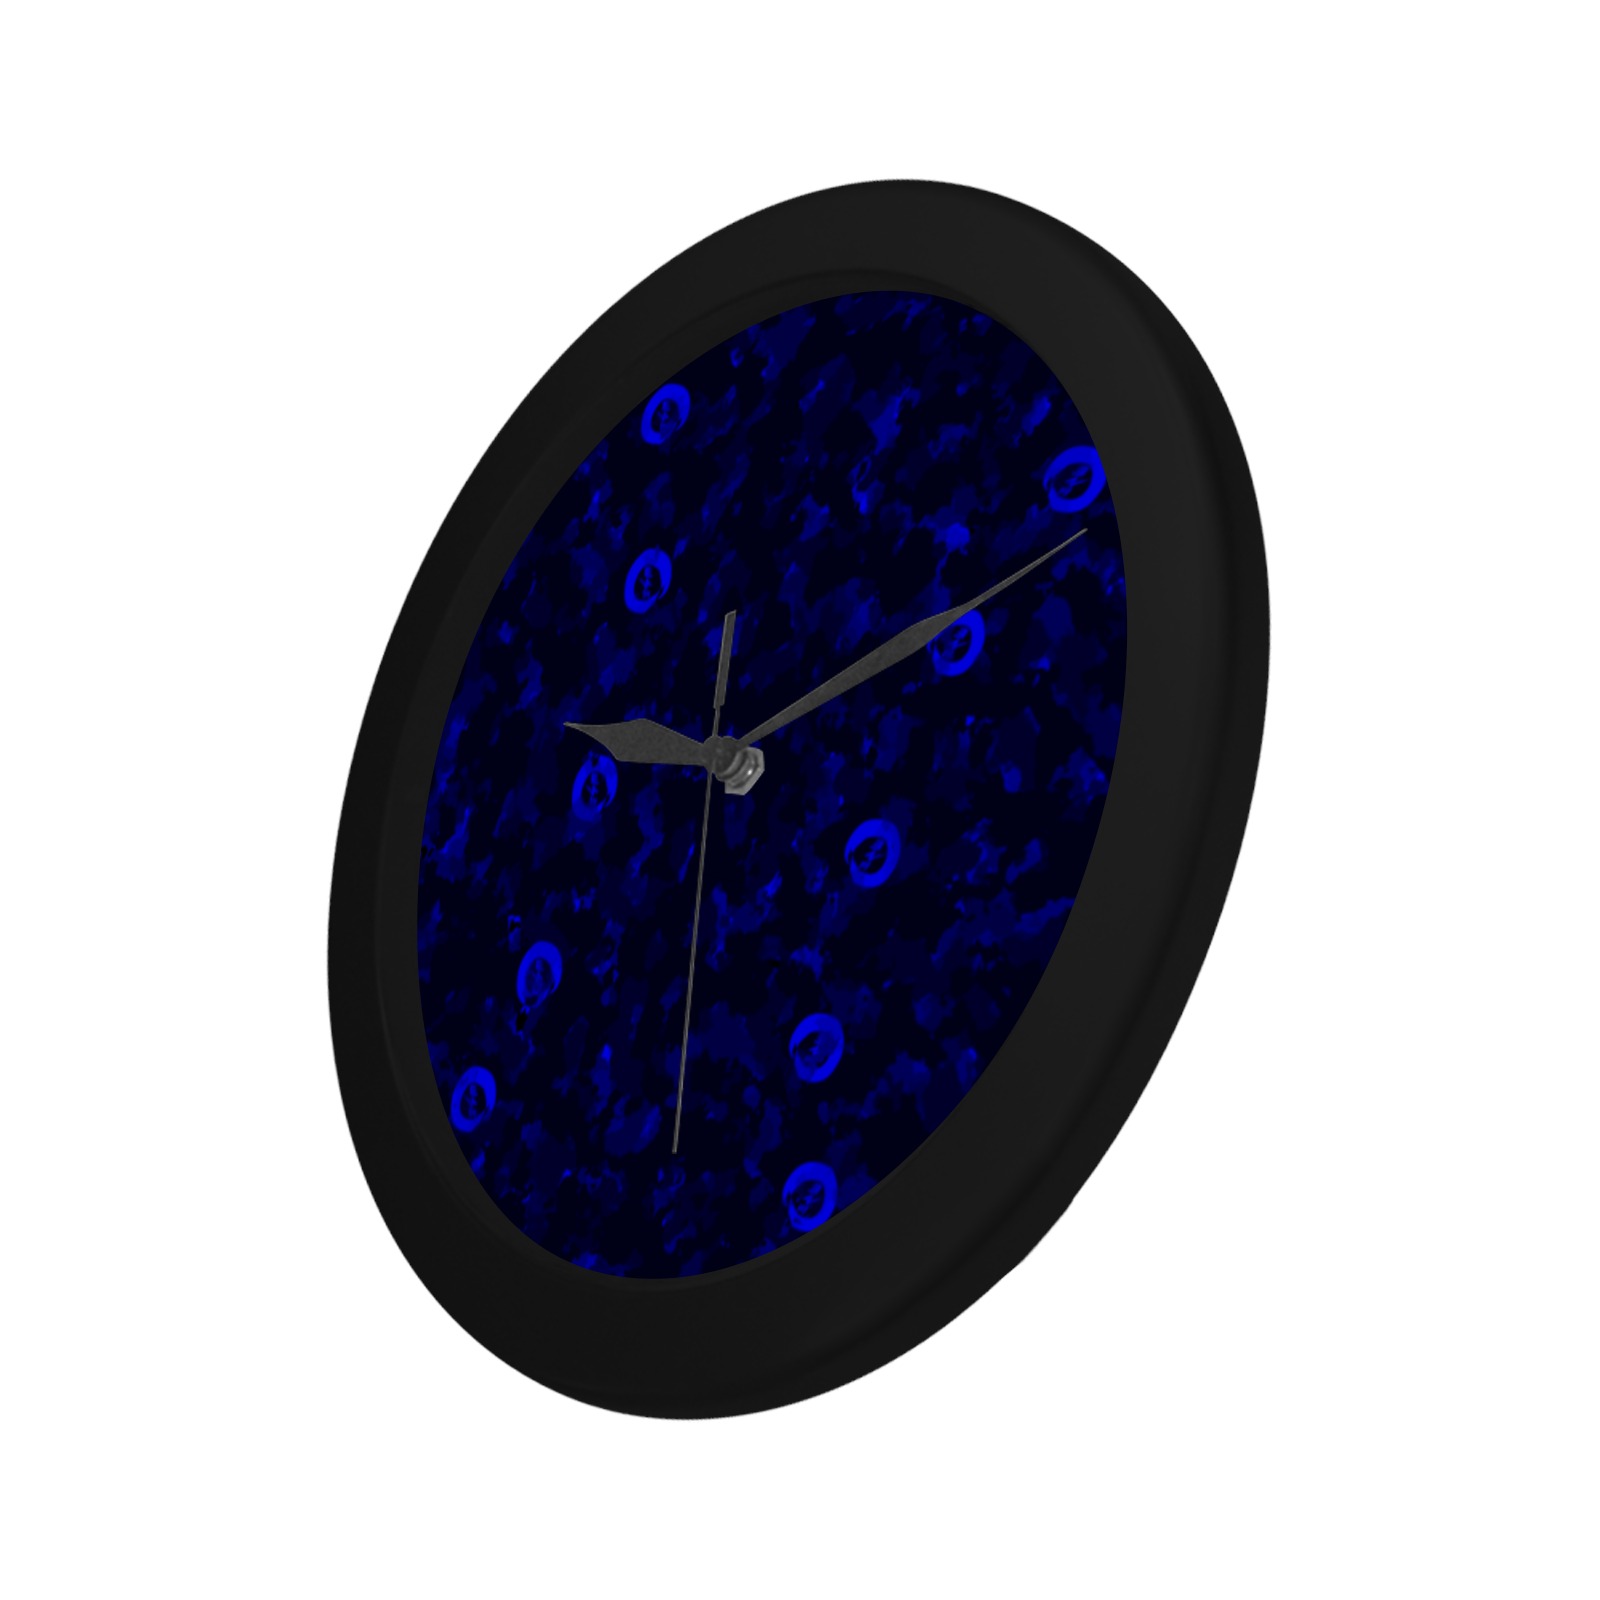 New Project (10) Circular Plastic Wall clock